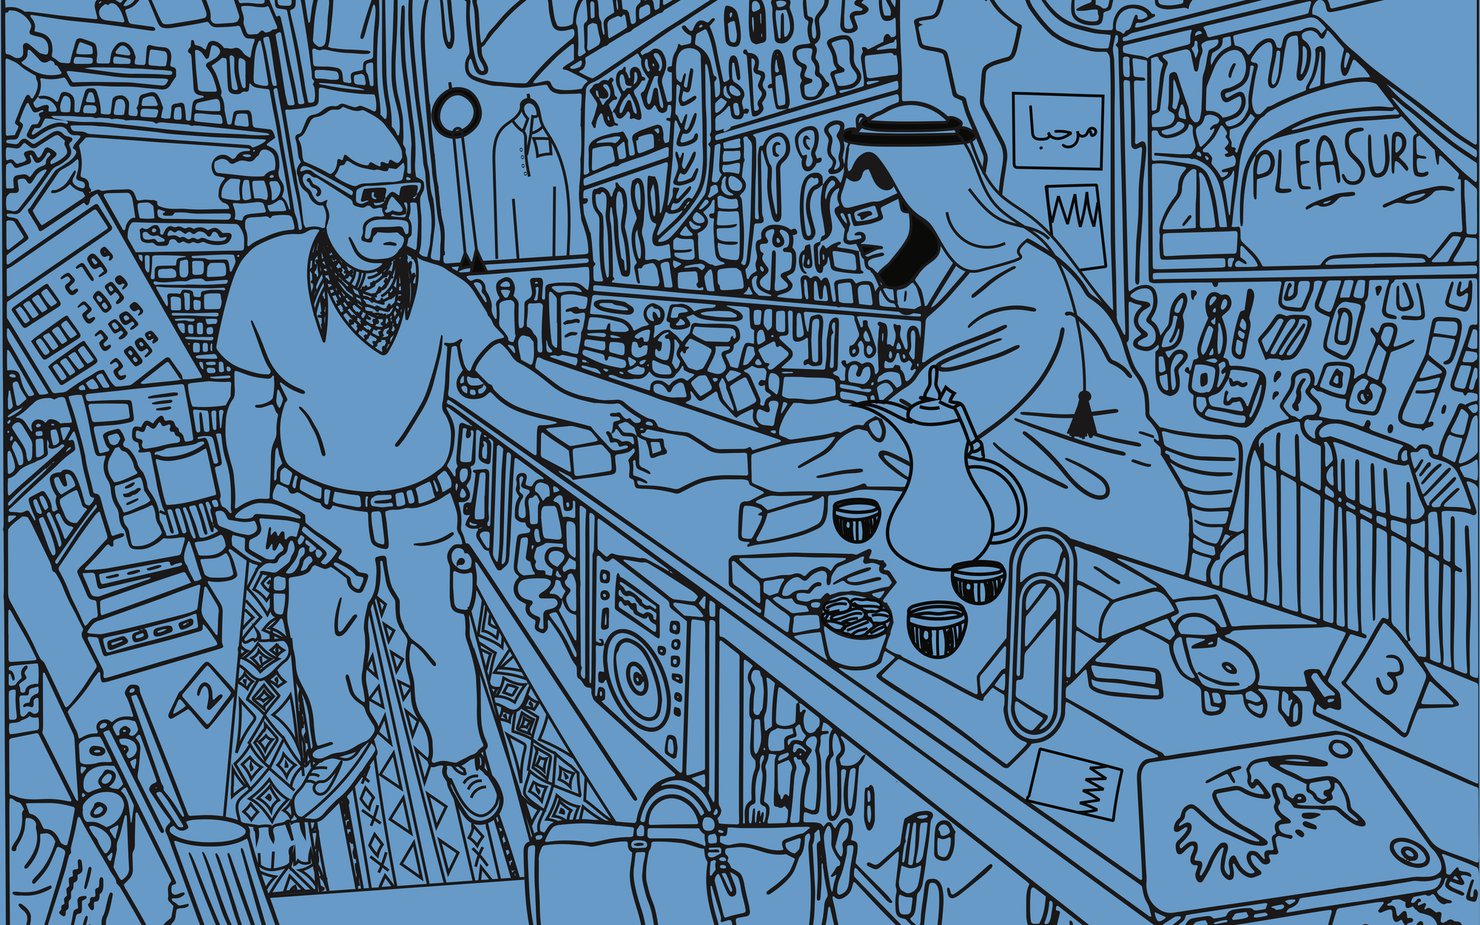 رسم خطي لصاحب متجر يرتدي زيّاً تقليدياً يبيع زبونا في محله التجاري المزدحم بالسلع